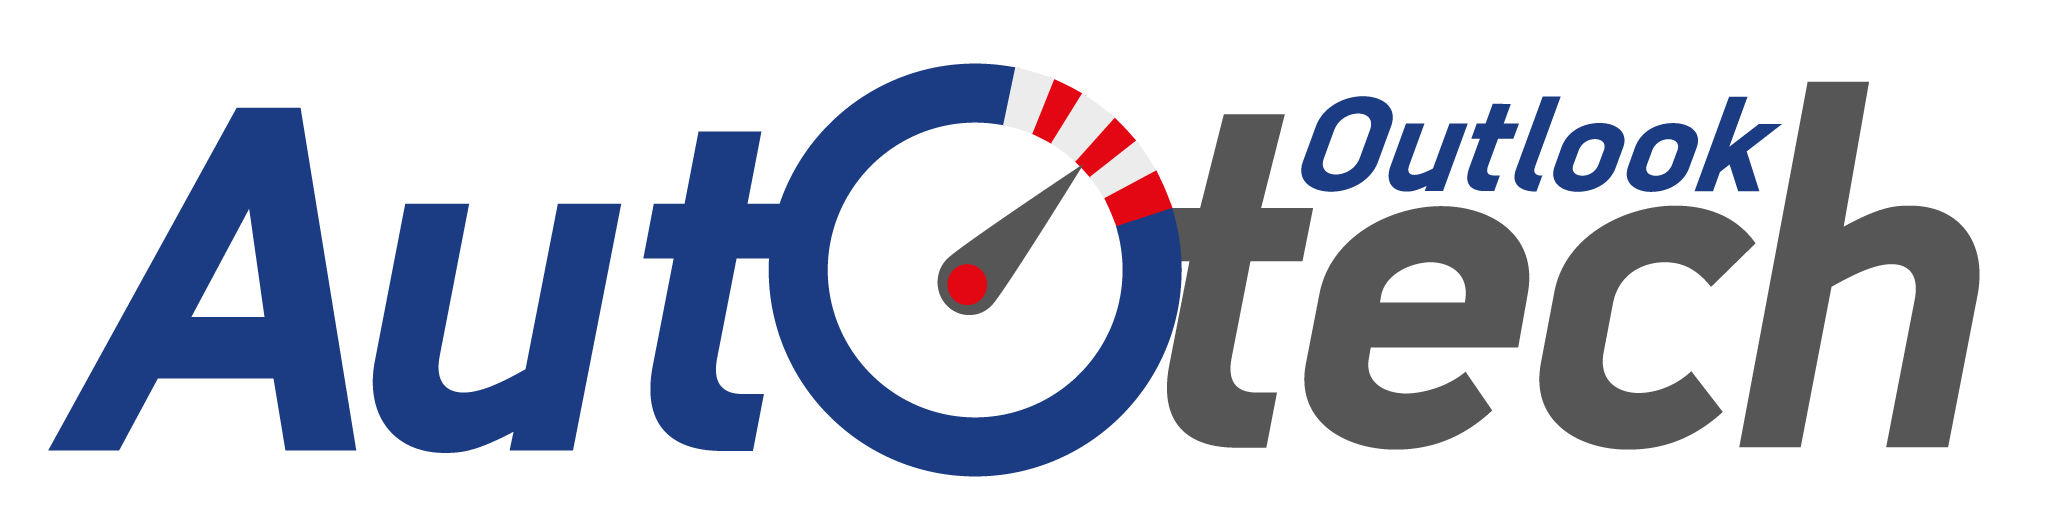 Auto Tech Outlook-Logo